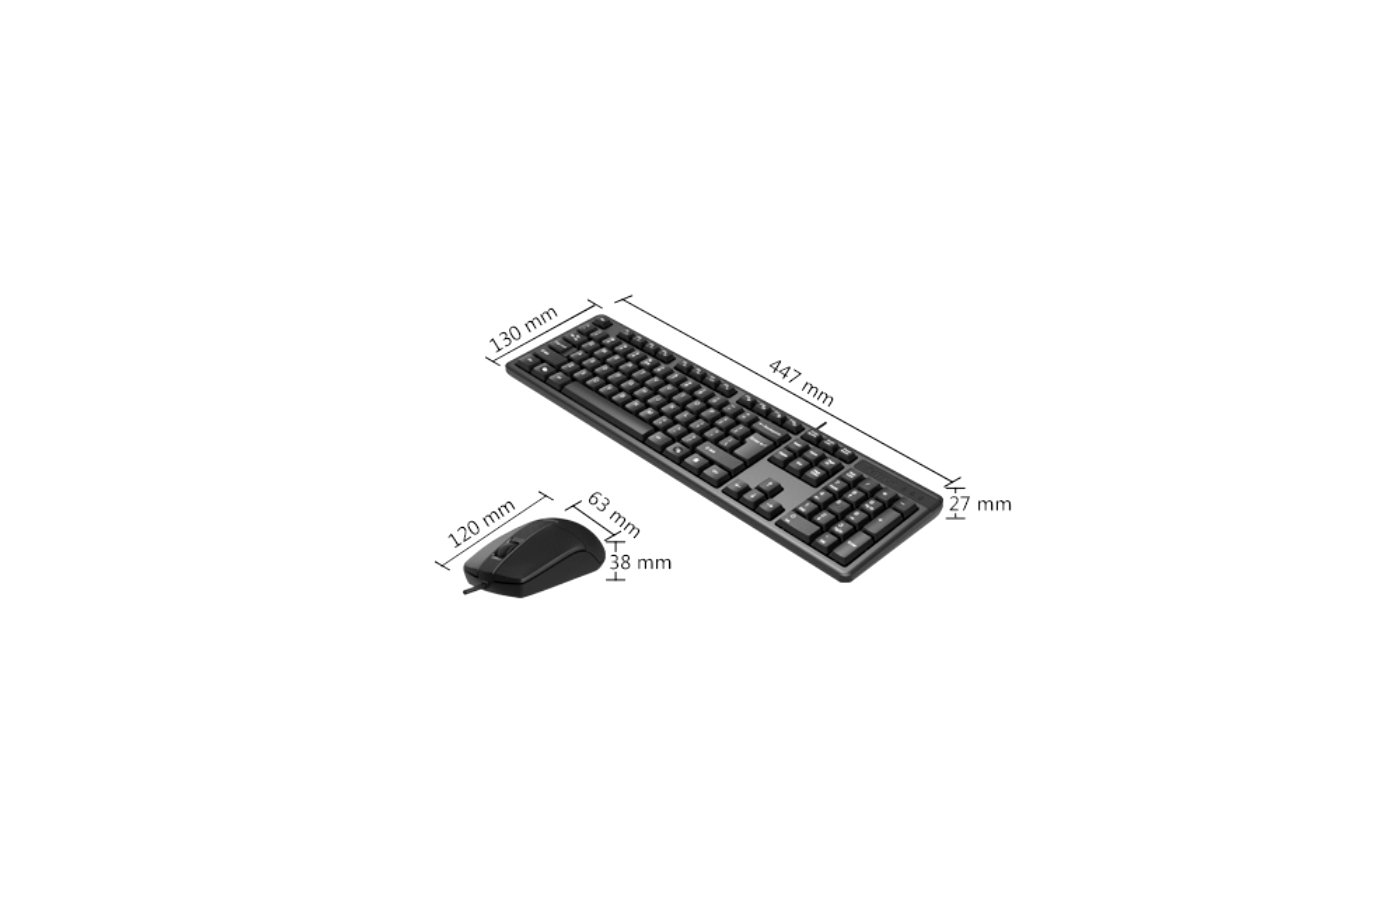 A4tech KK-3330s. Клавиатура + мышь a4tech KK-3330s клав:черный мышь:черный USB (KK-3330s USB (Black)). A4tech KK-3330. Kk 3330s